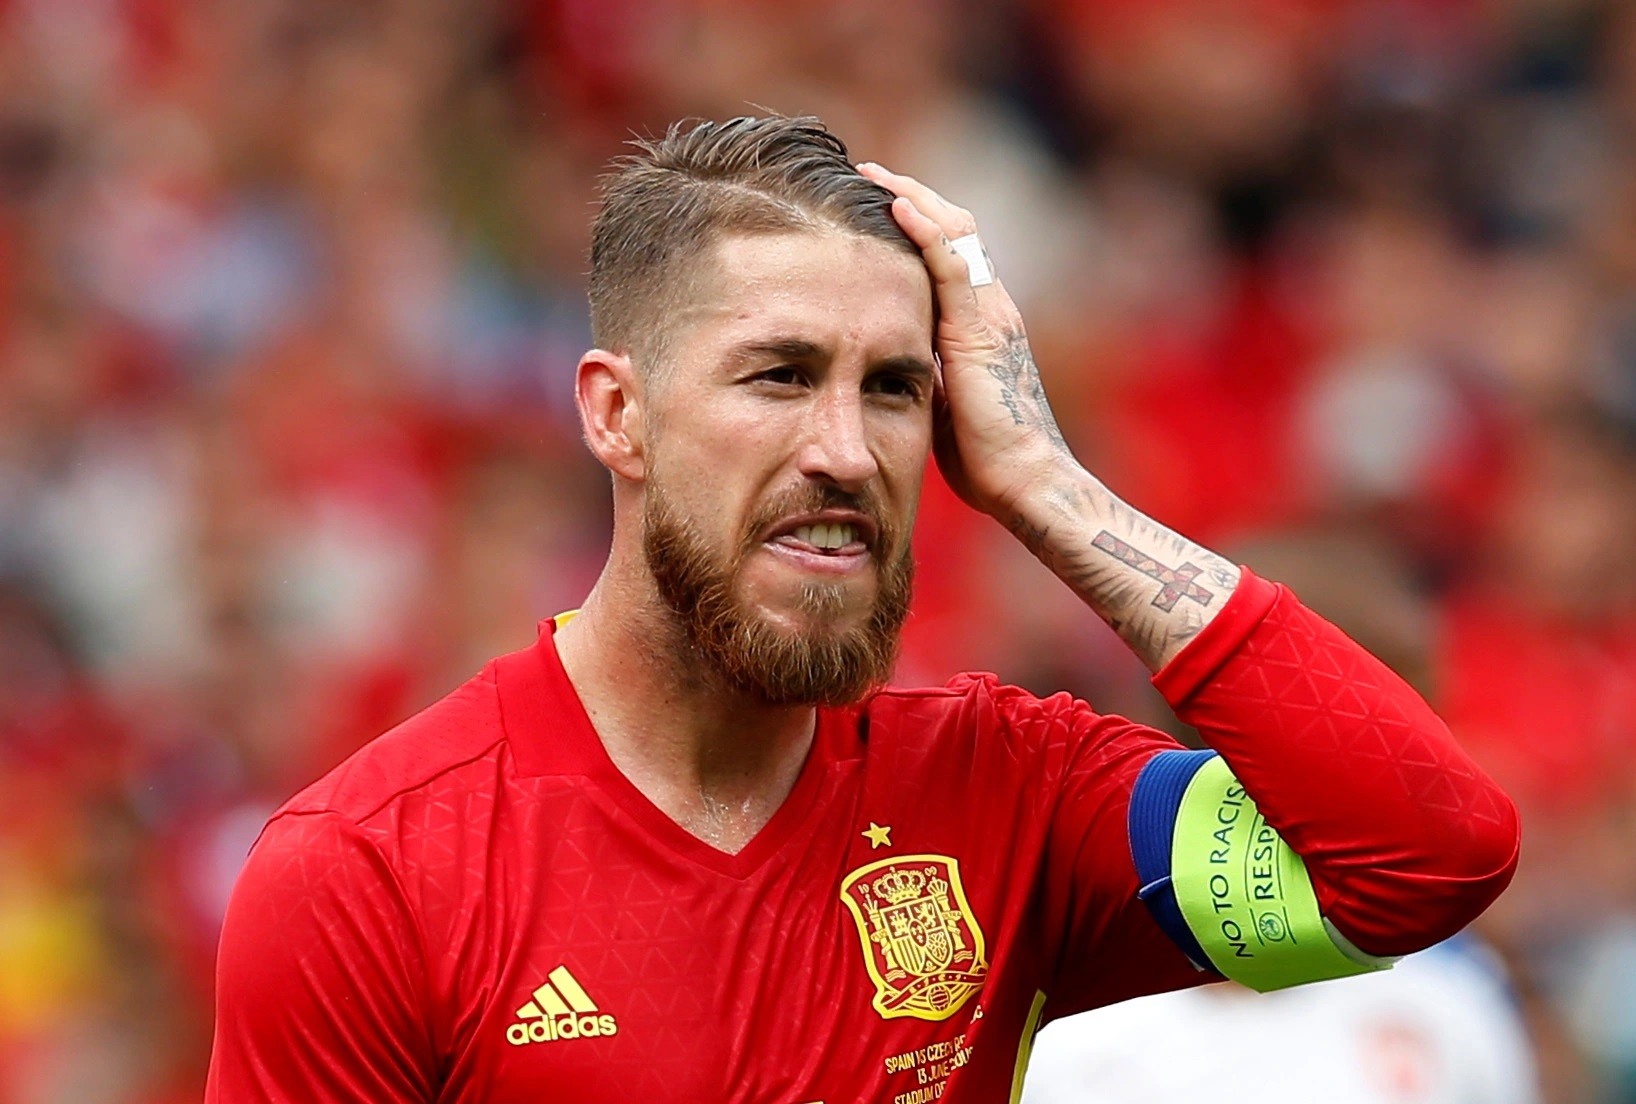 Đón xem những khoảnh khắc đỉnh cao của đội tuyển bóng đá Tây Ban Nha tại World Cup 2022! Tận hưởng trận đấu gay cấn và những bàn thắng đẹp mắt của những cầu thủ tài năng. Hãy chuẩn bị sẵn sàng để cổ vũ cho đội bóng yêu thích của bạn!